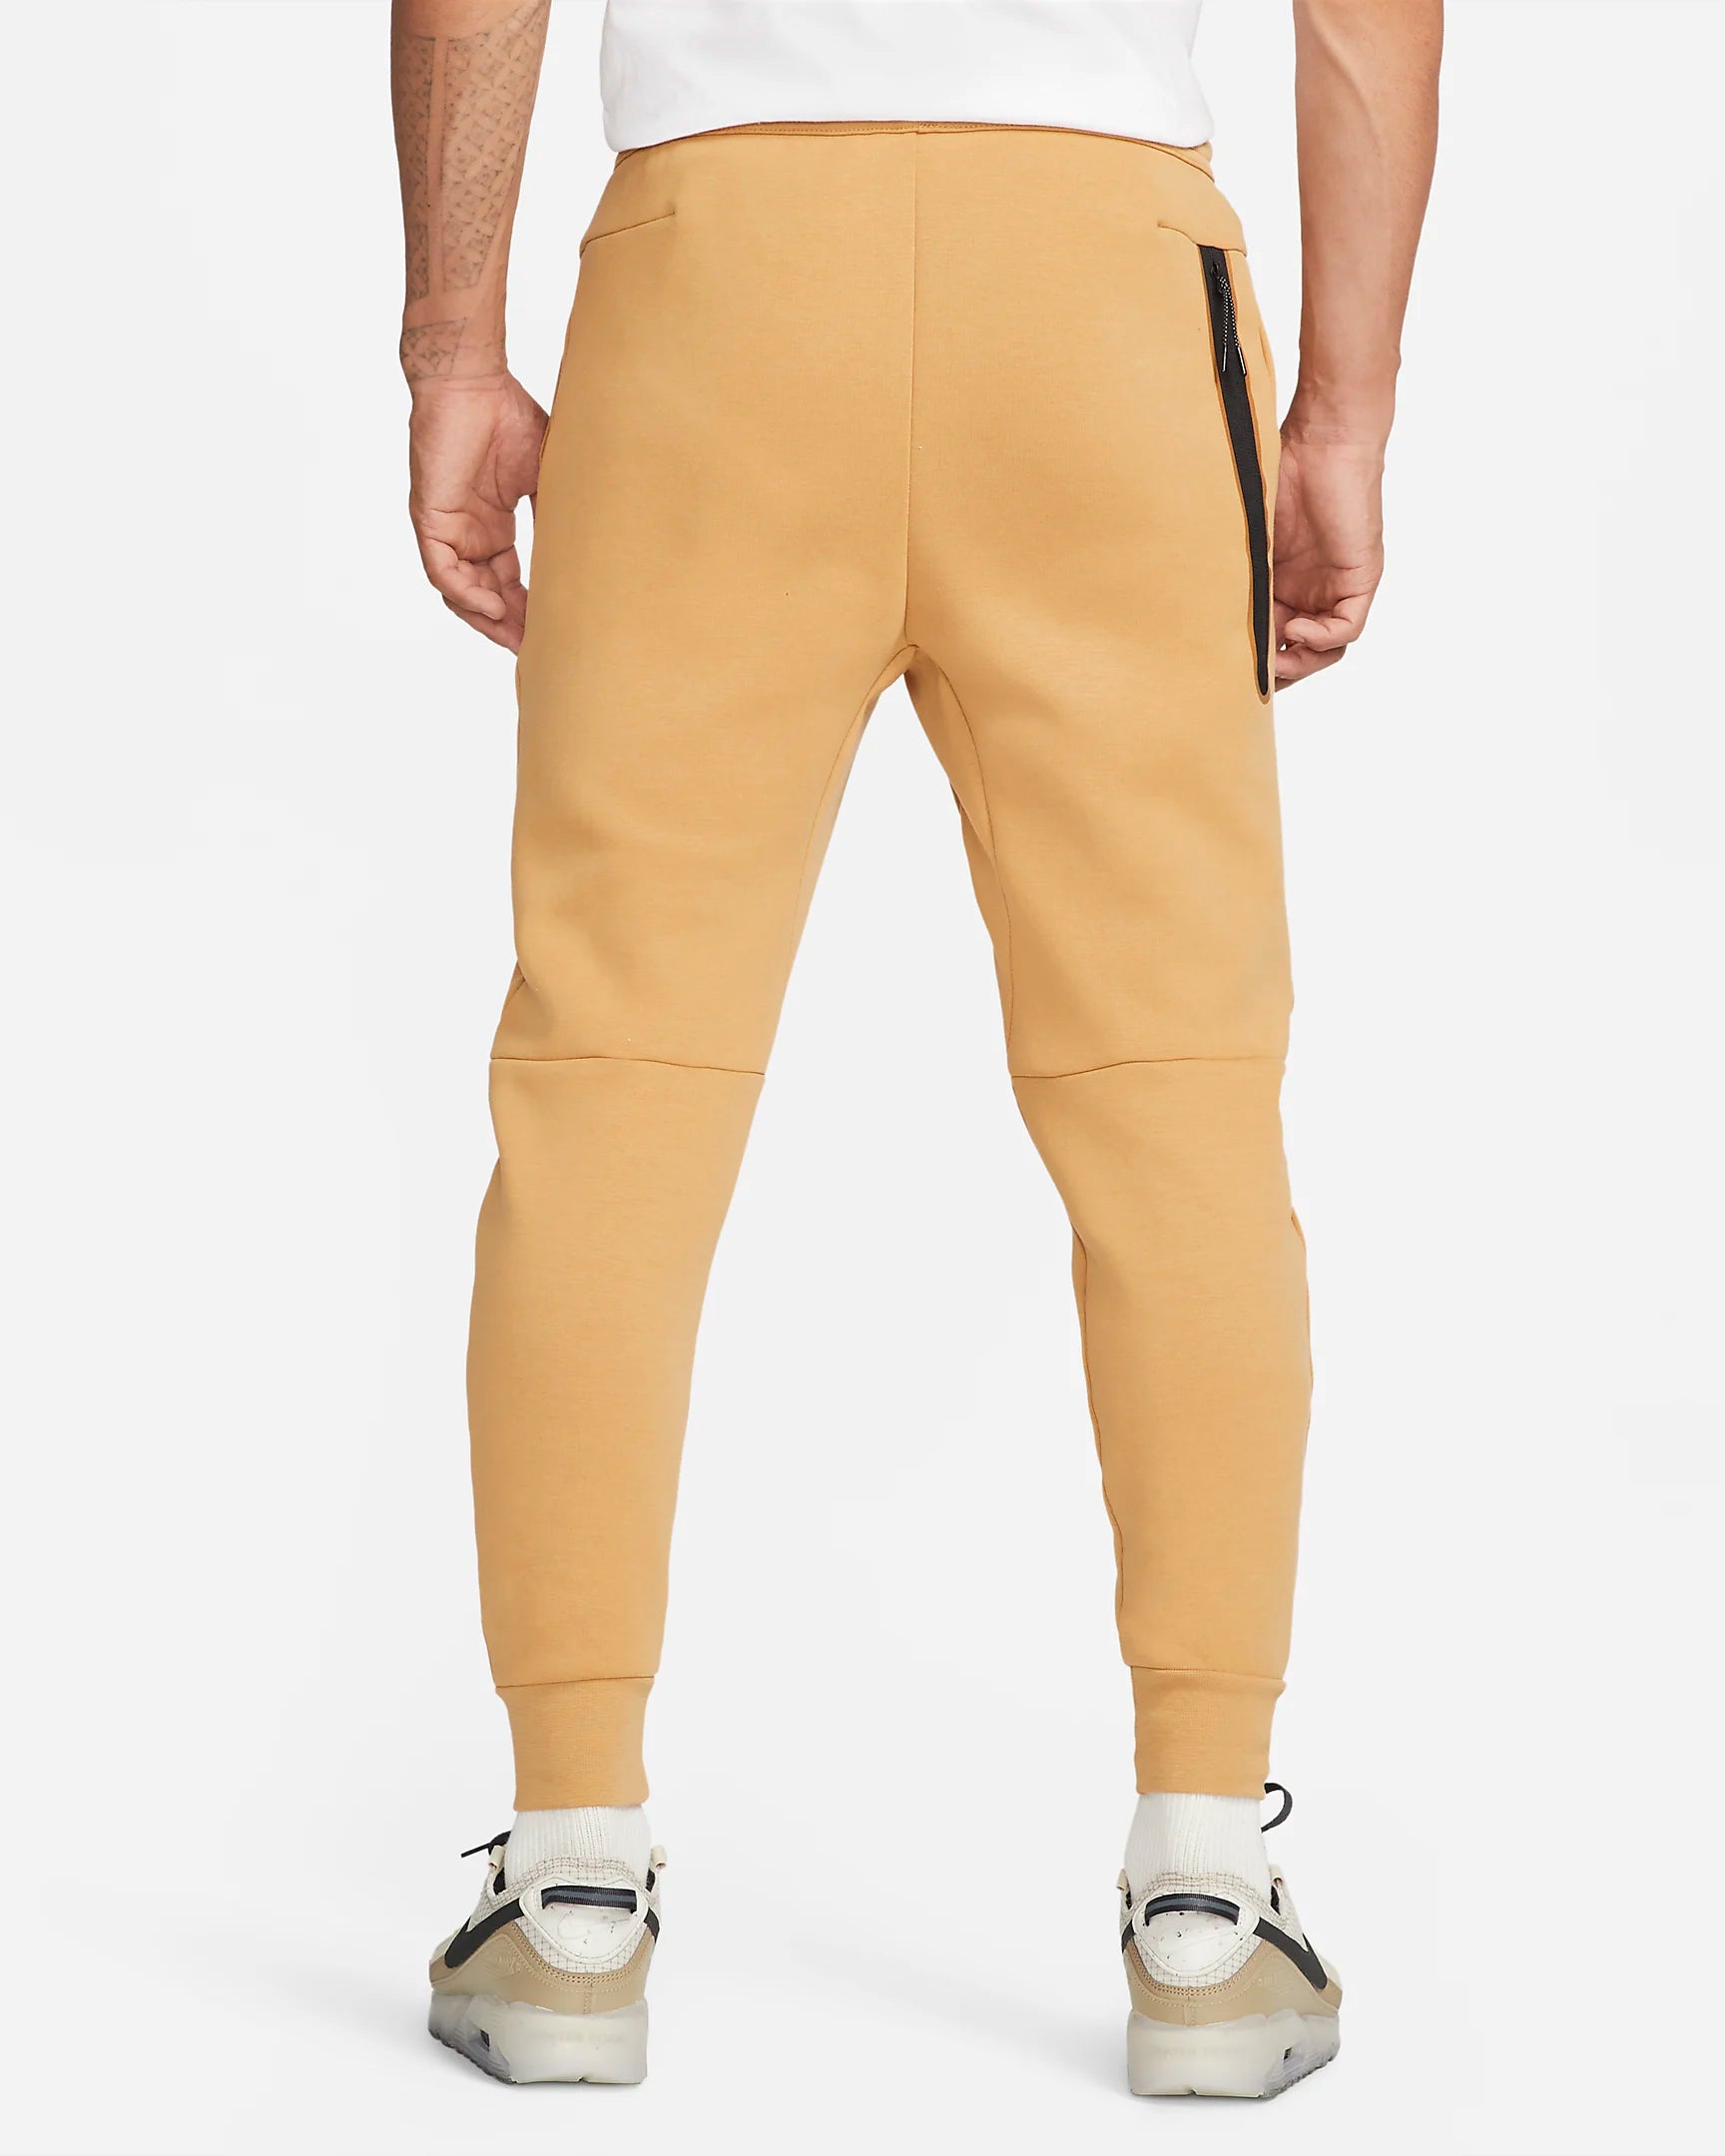 Pantalon jogging Nike Tech Fleece - Beige/Noir